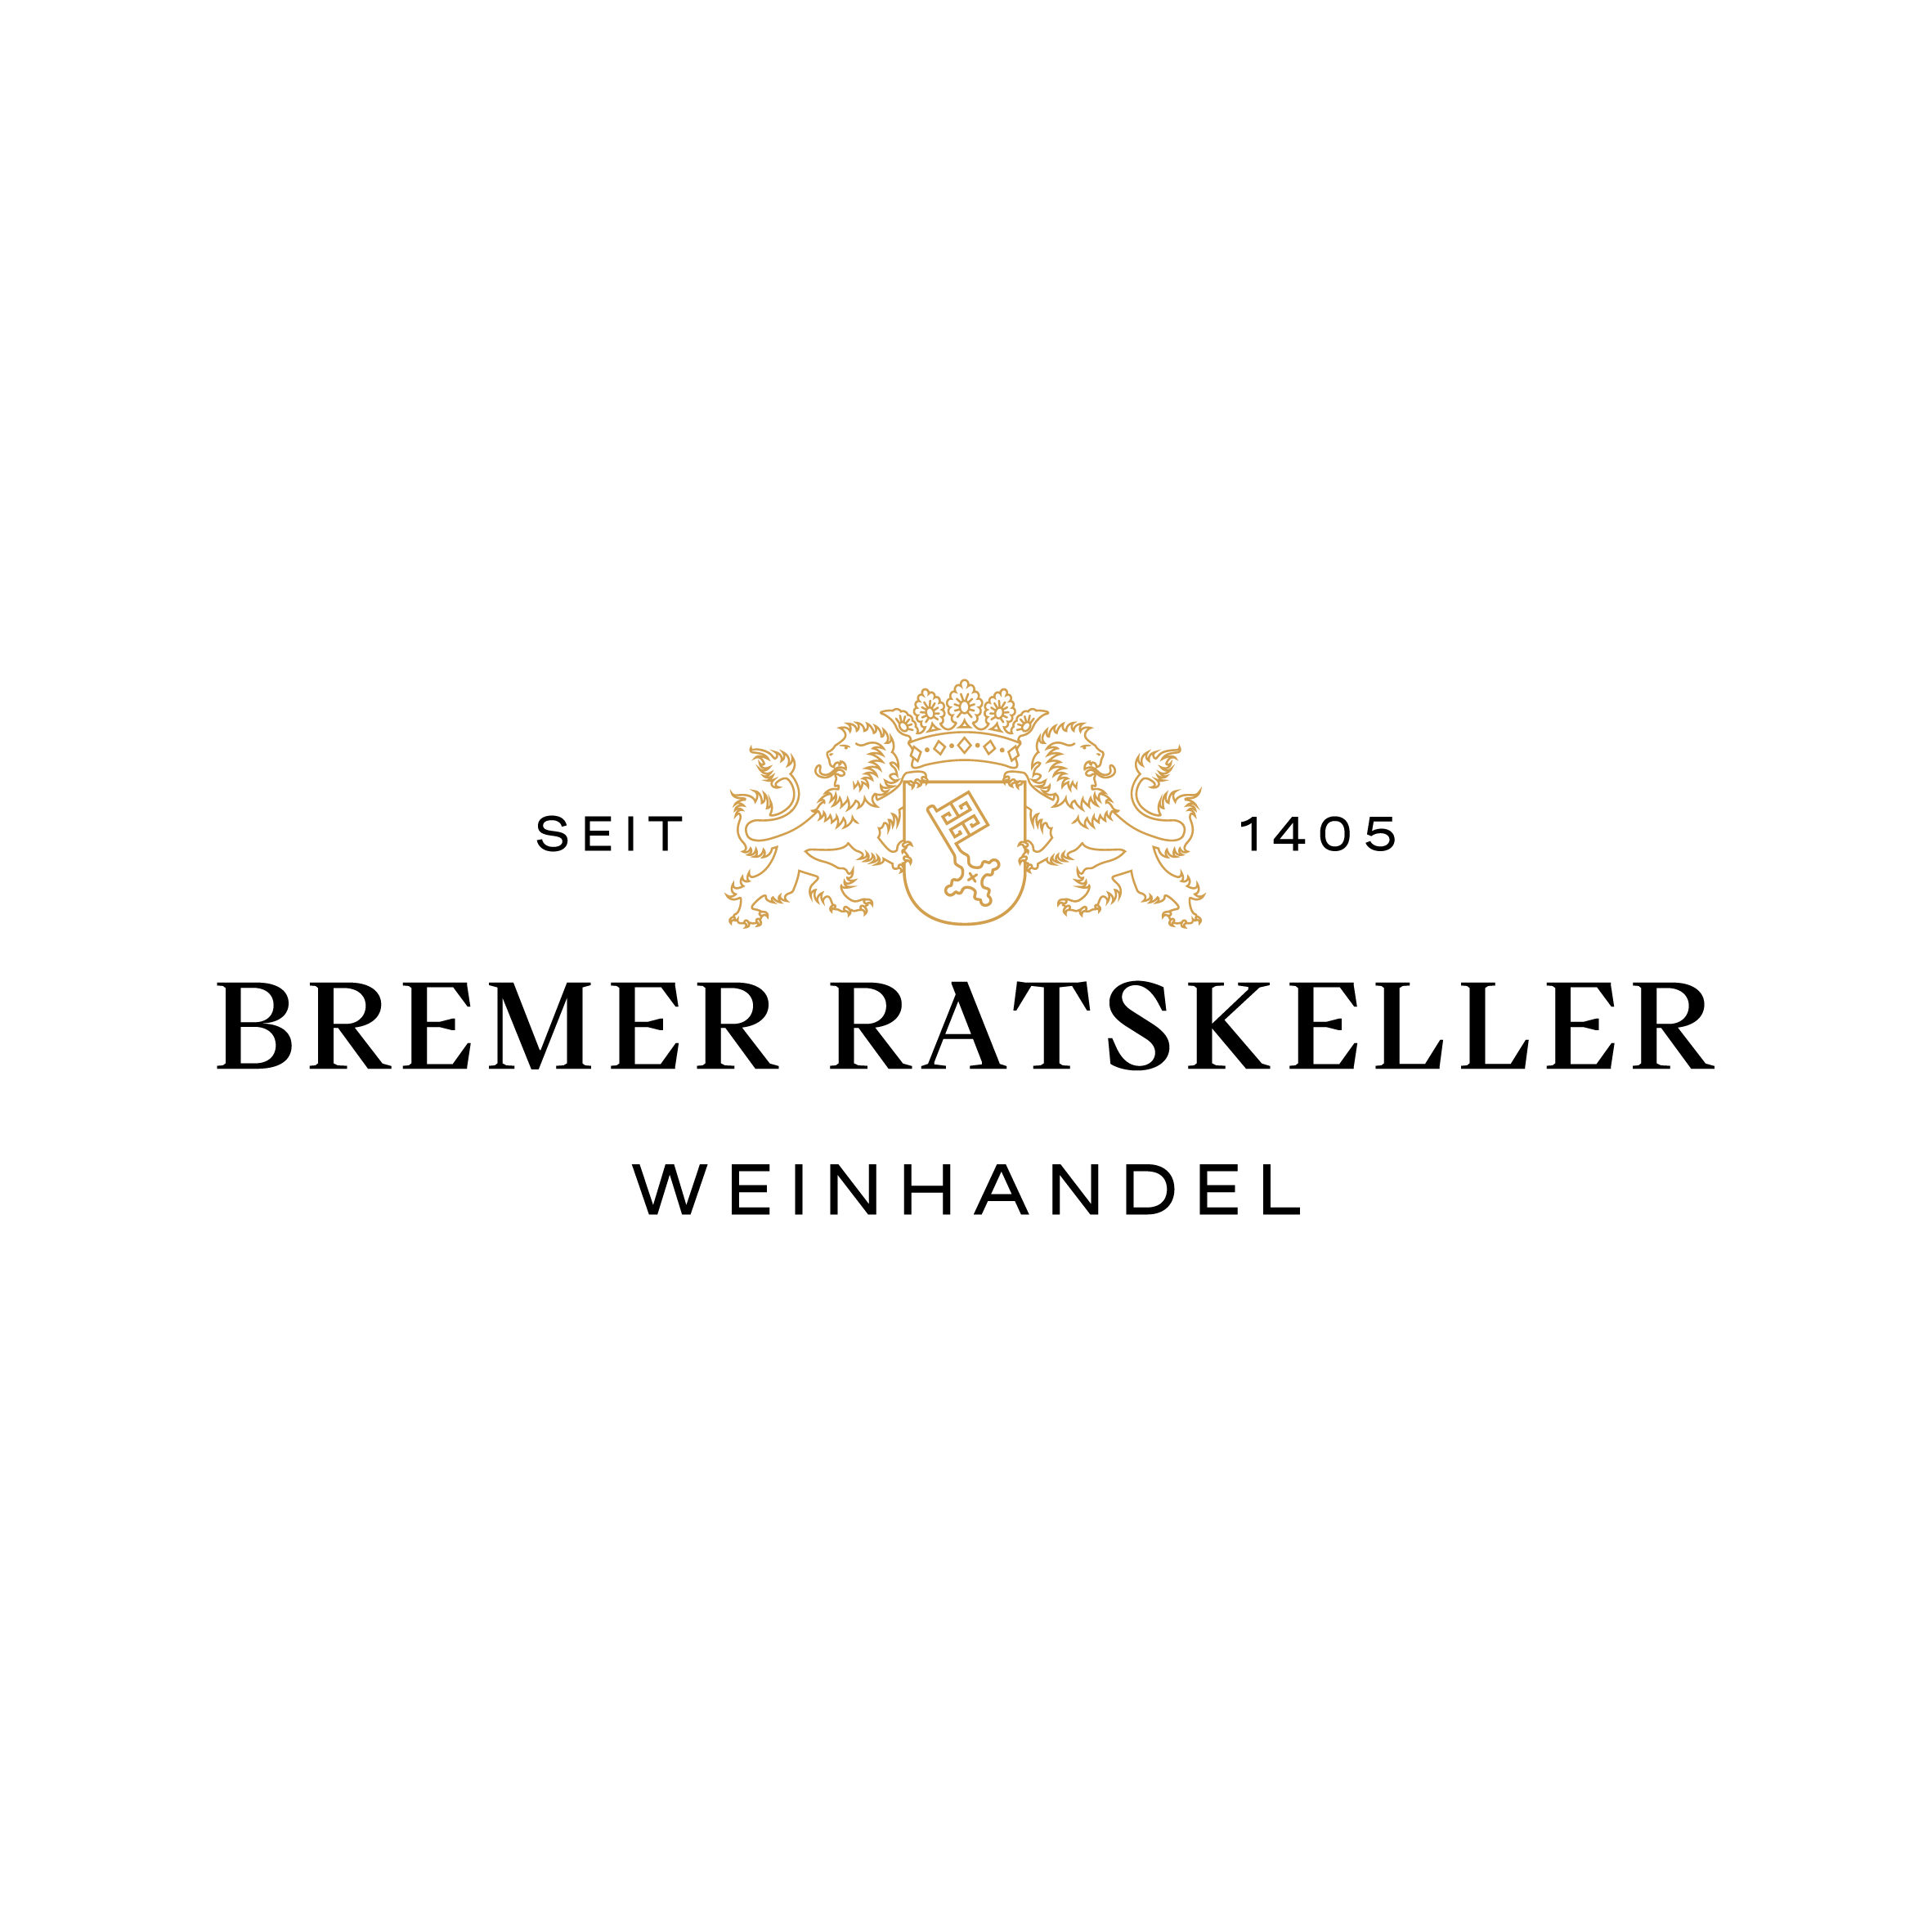 Bremer Ratskeller – Weinhandel seit 1405 Bremen 0421 337788